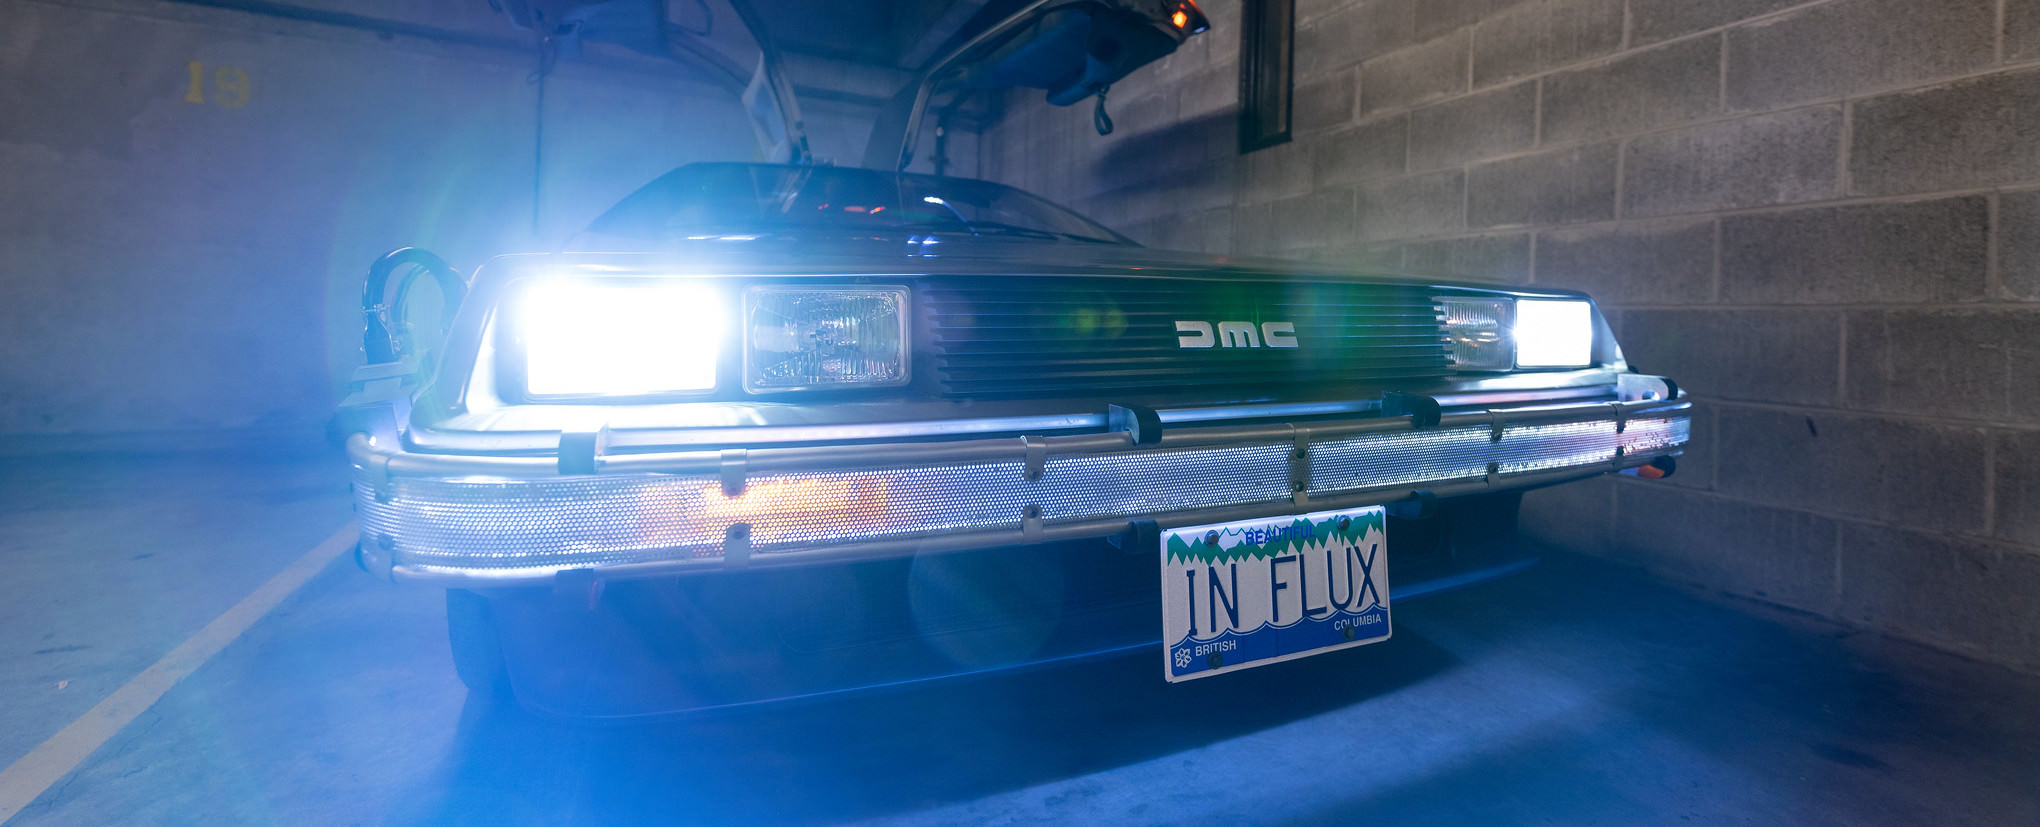 DeLorean 'Time Machine' replica, with license plate: 'IN FLUX'